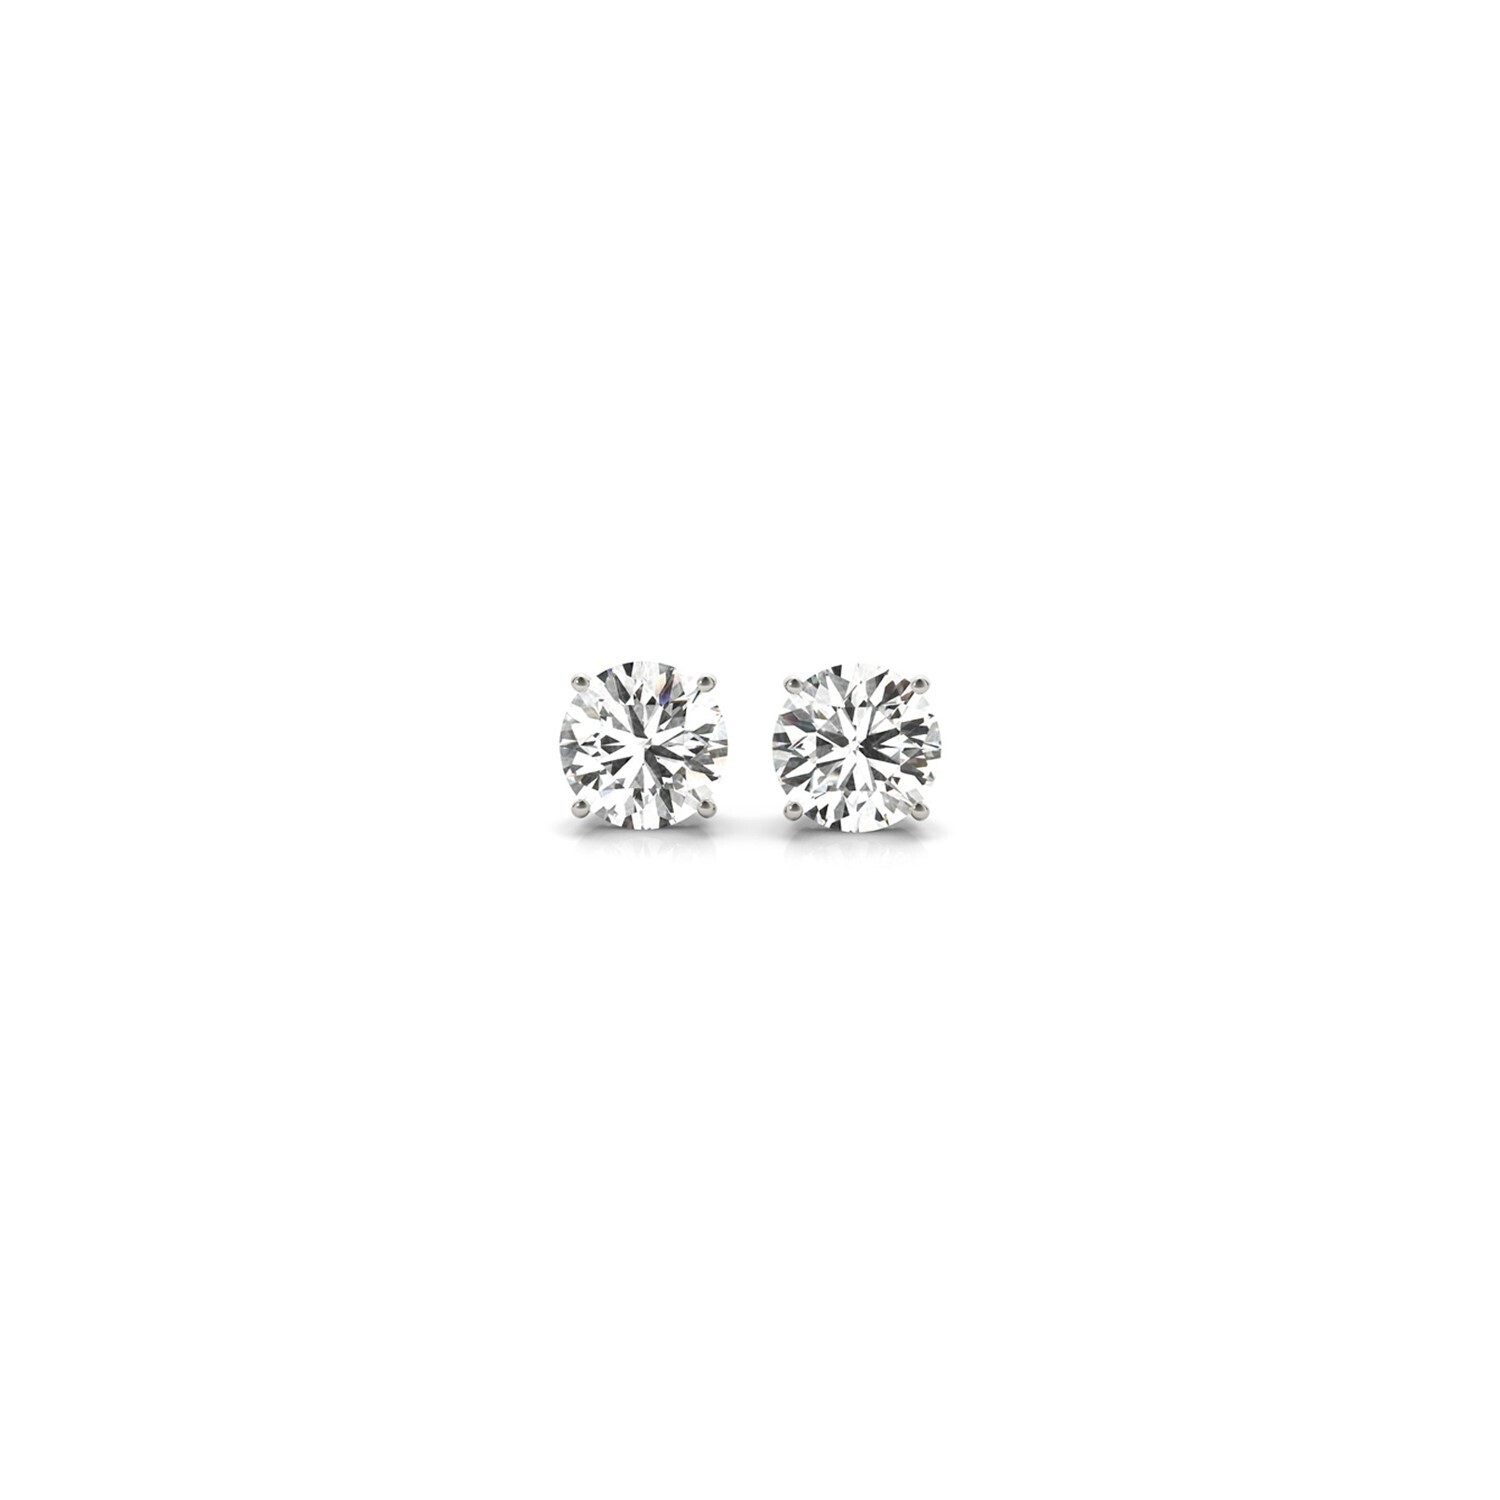 1/2 cttw Lab Grown Round Diamond Stud Earrings 14k White Gold (G/VS2)